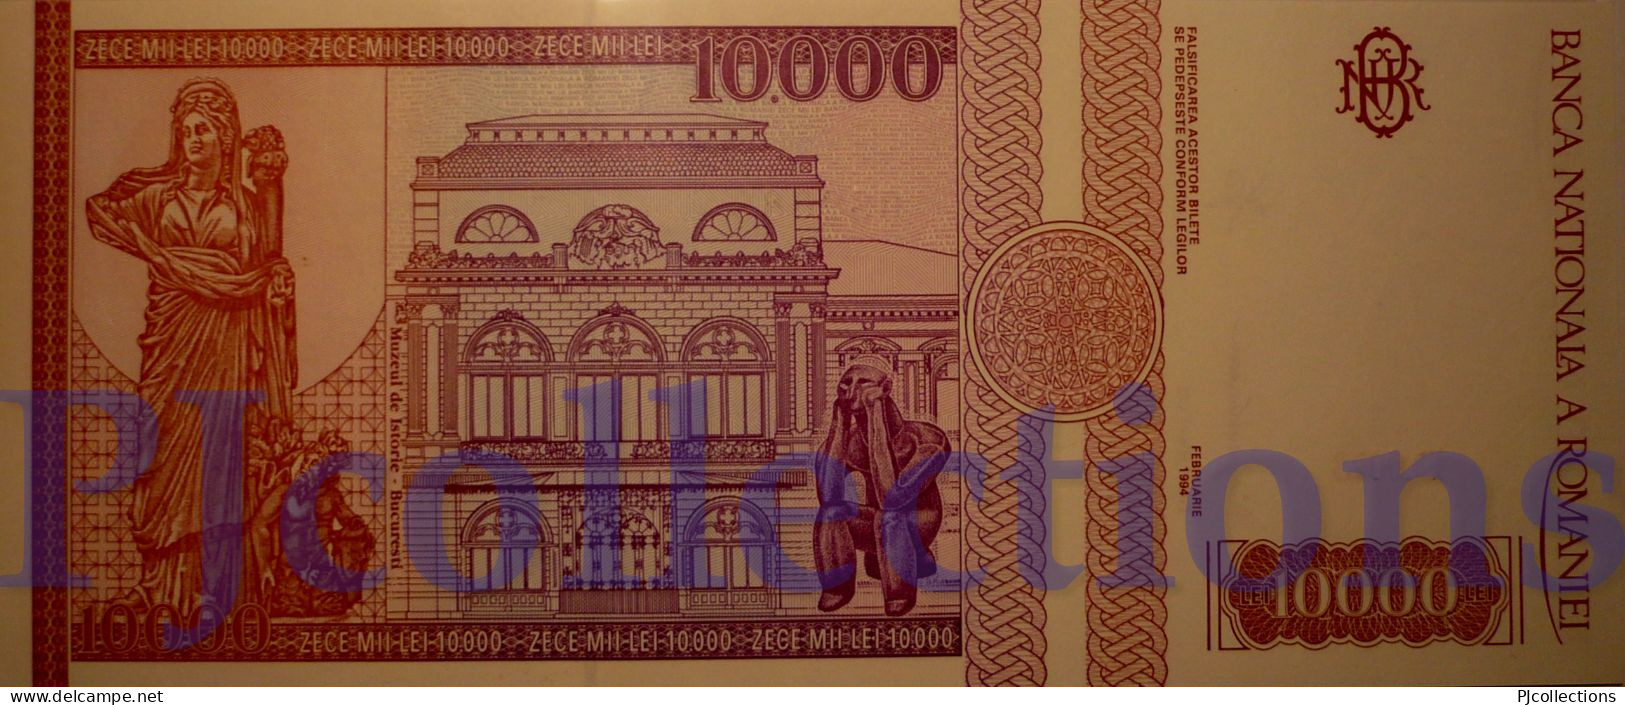 ROMANIA 10000 LEI 1994 PICK 105 UNC - Rumänien